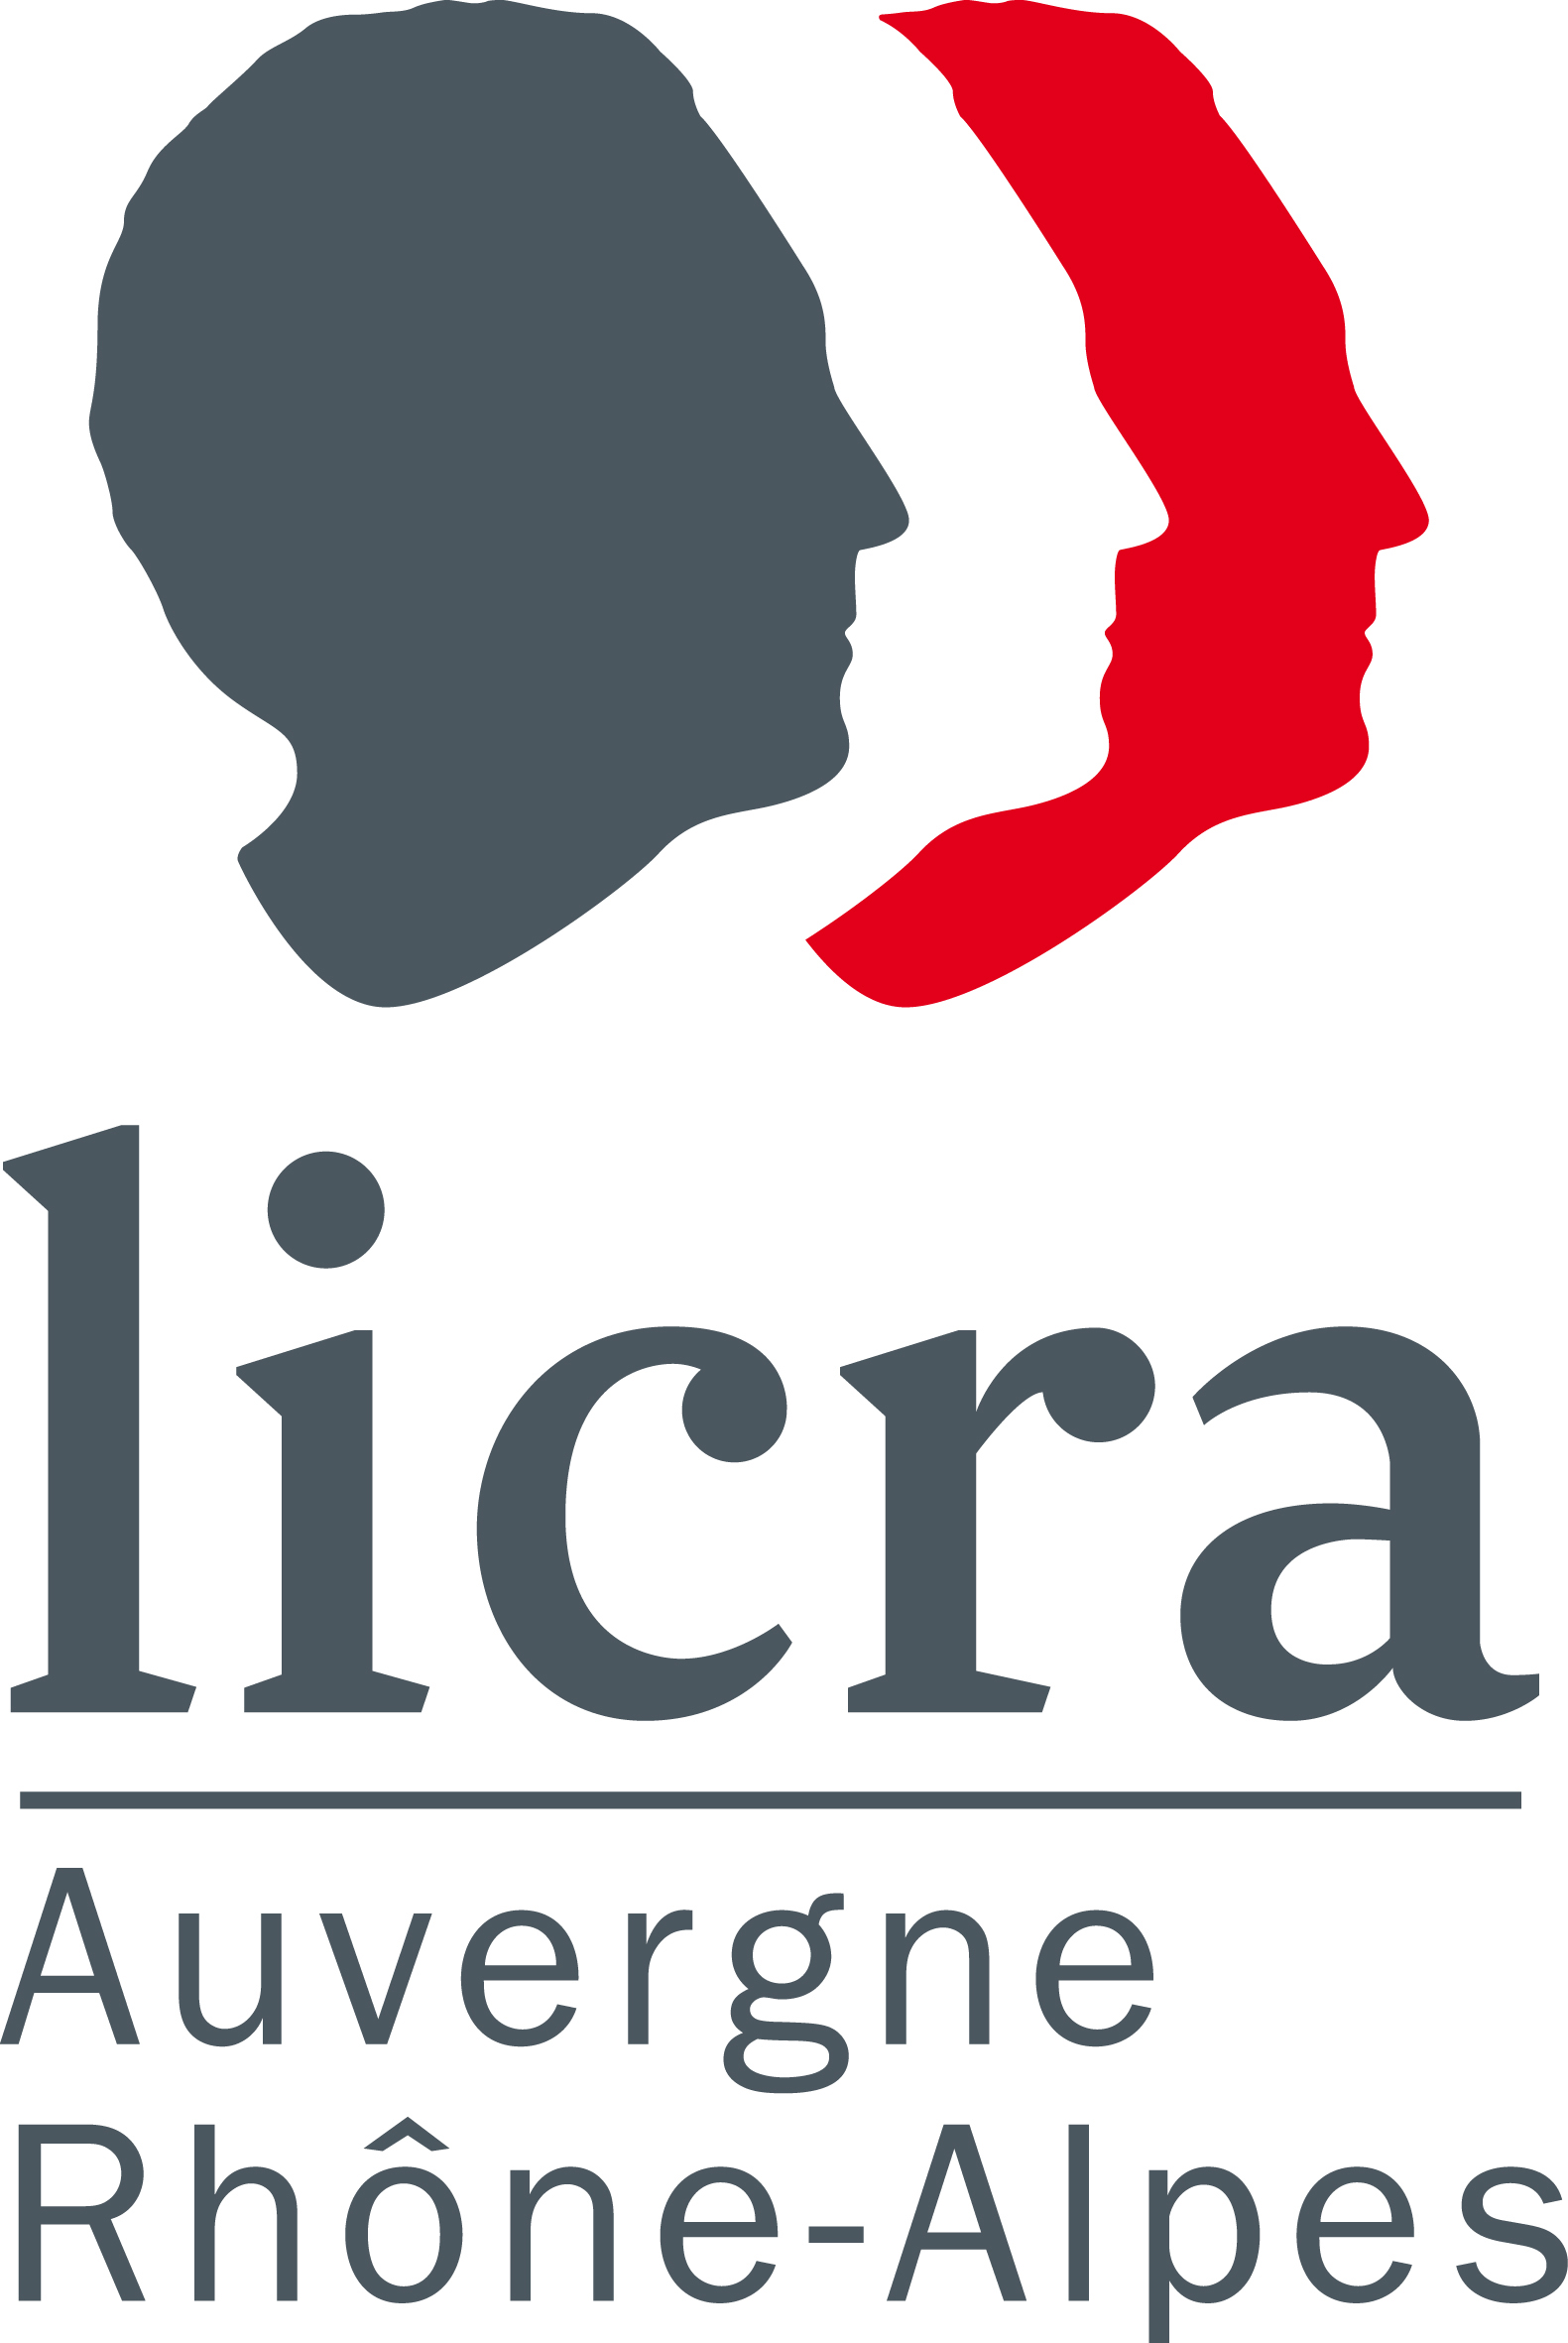 Logo LICRA Auvergne Rhône-Alpes